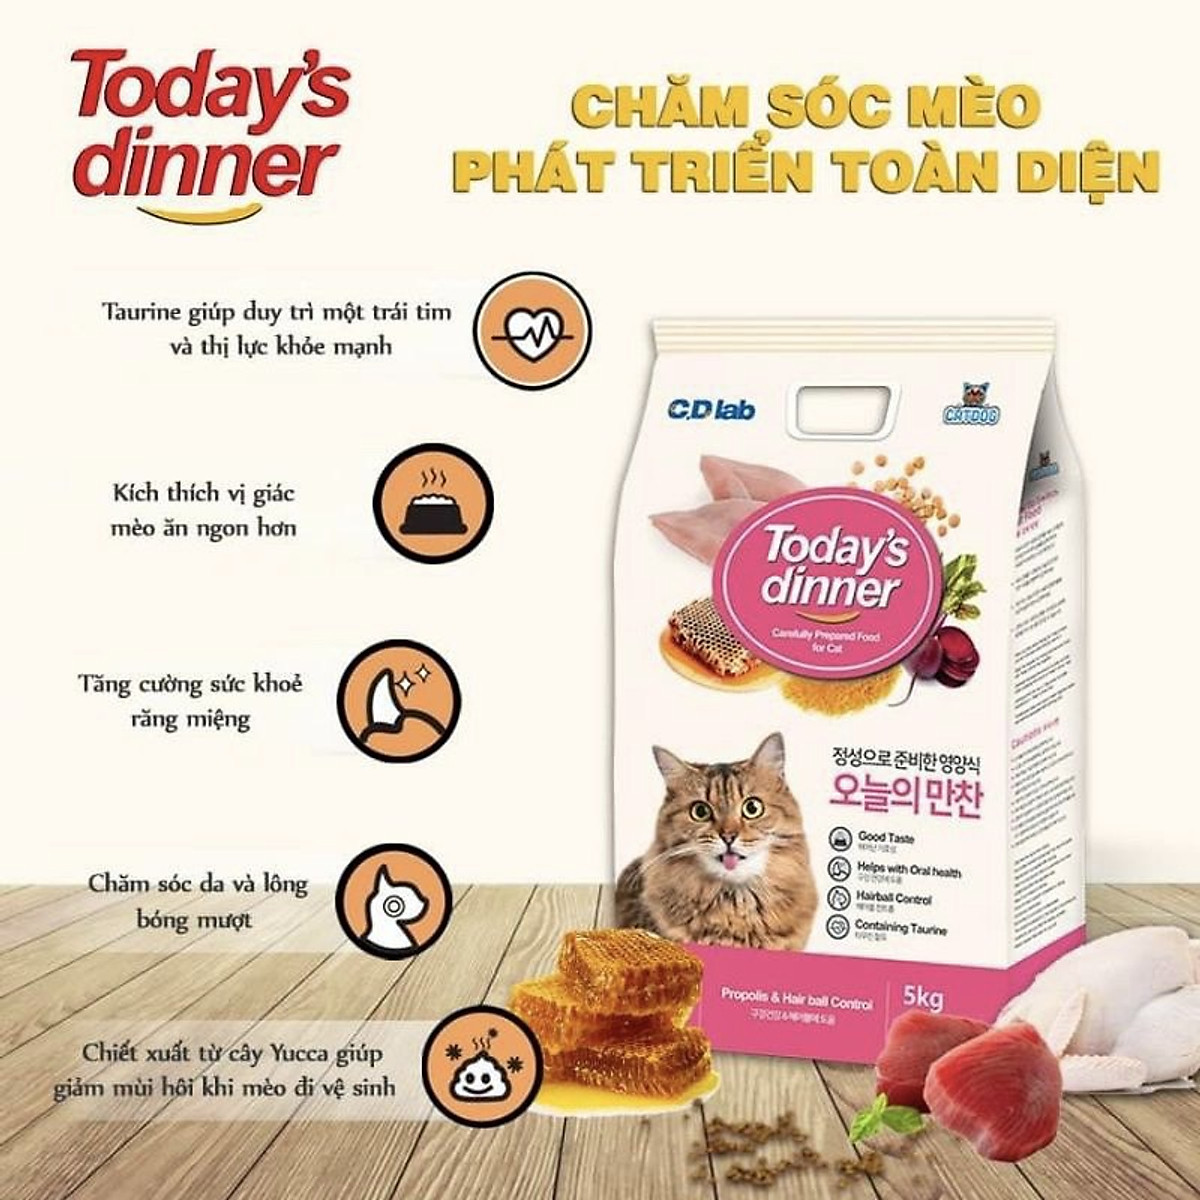 Hạt Thức Ăn Cân Bằng Dinh Dưỡng Cho Mèo Mọi Lứa Tuổi Today's Dinner Gói 1kg